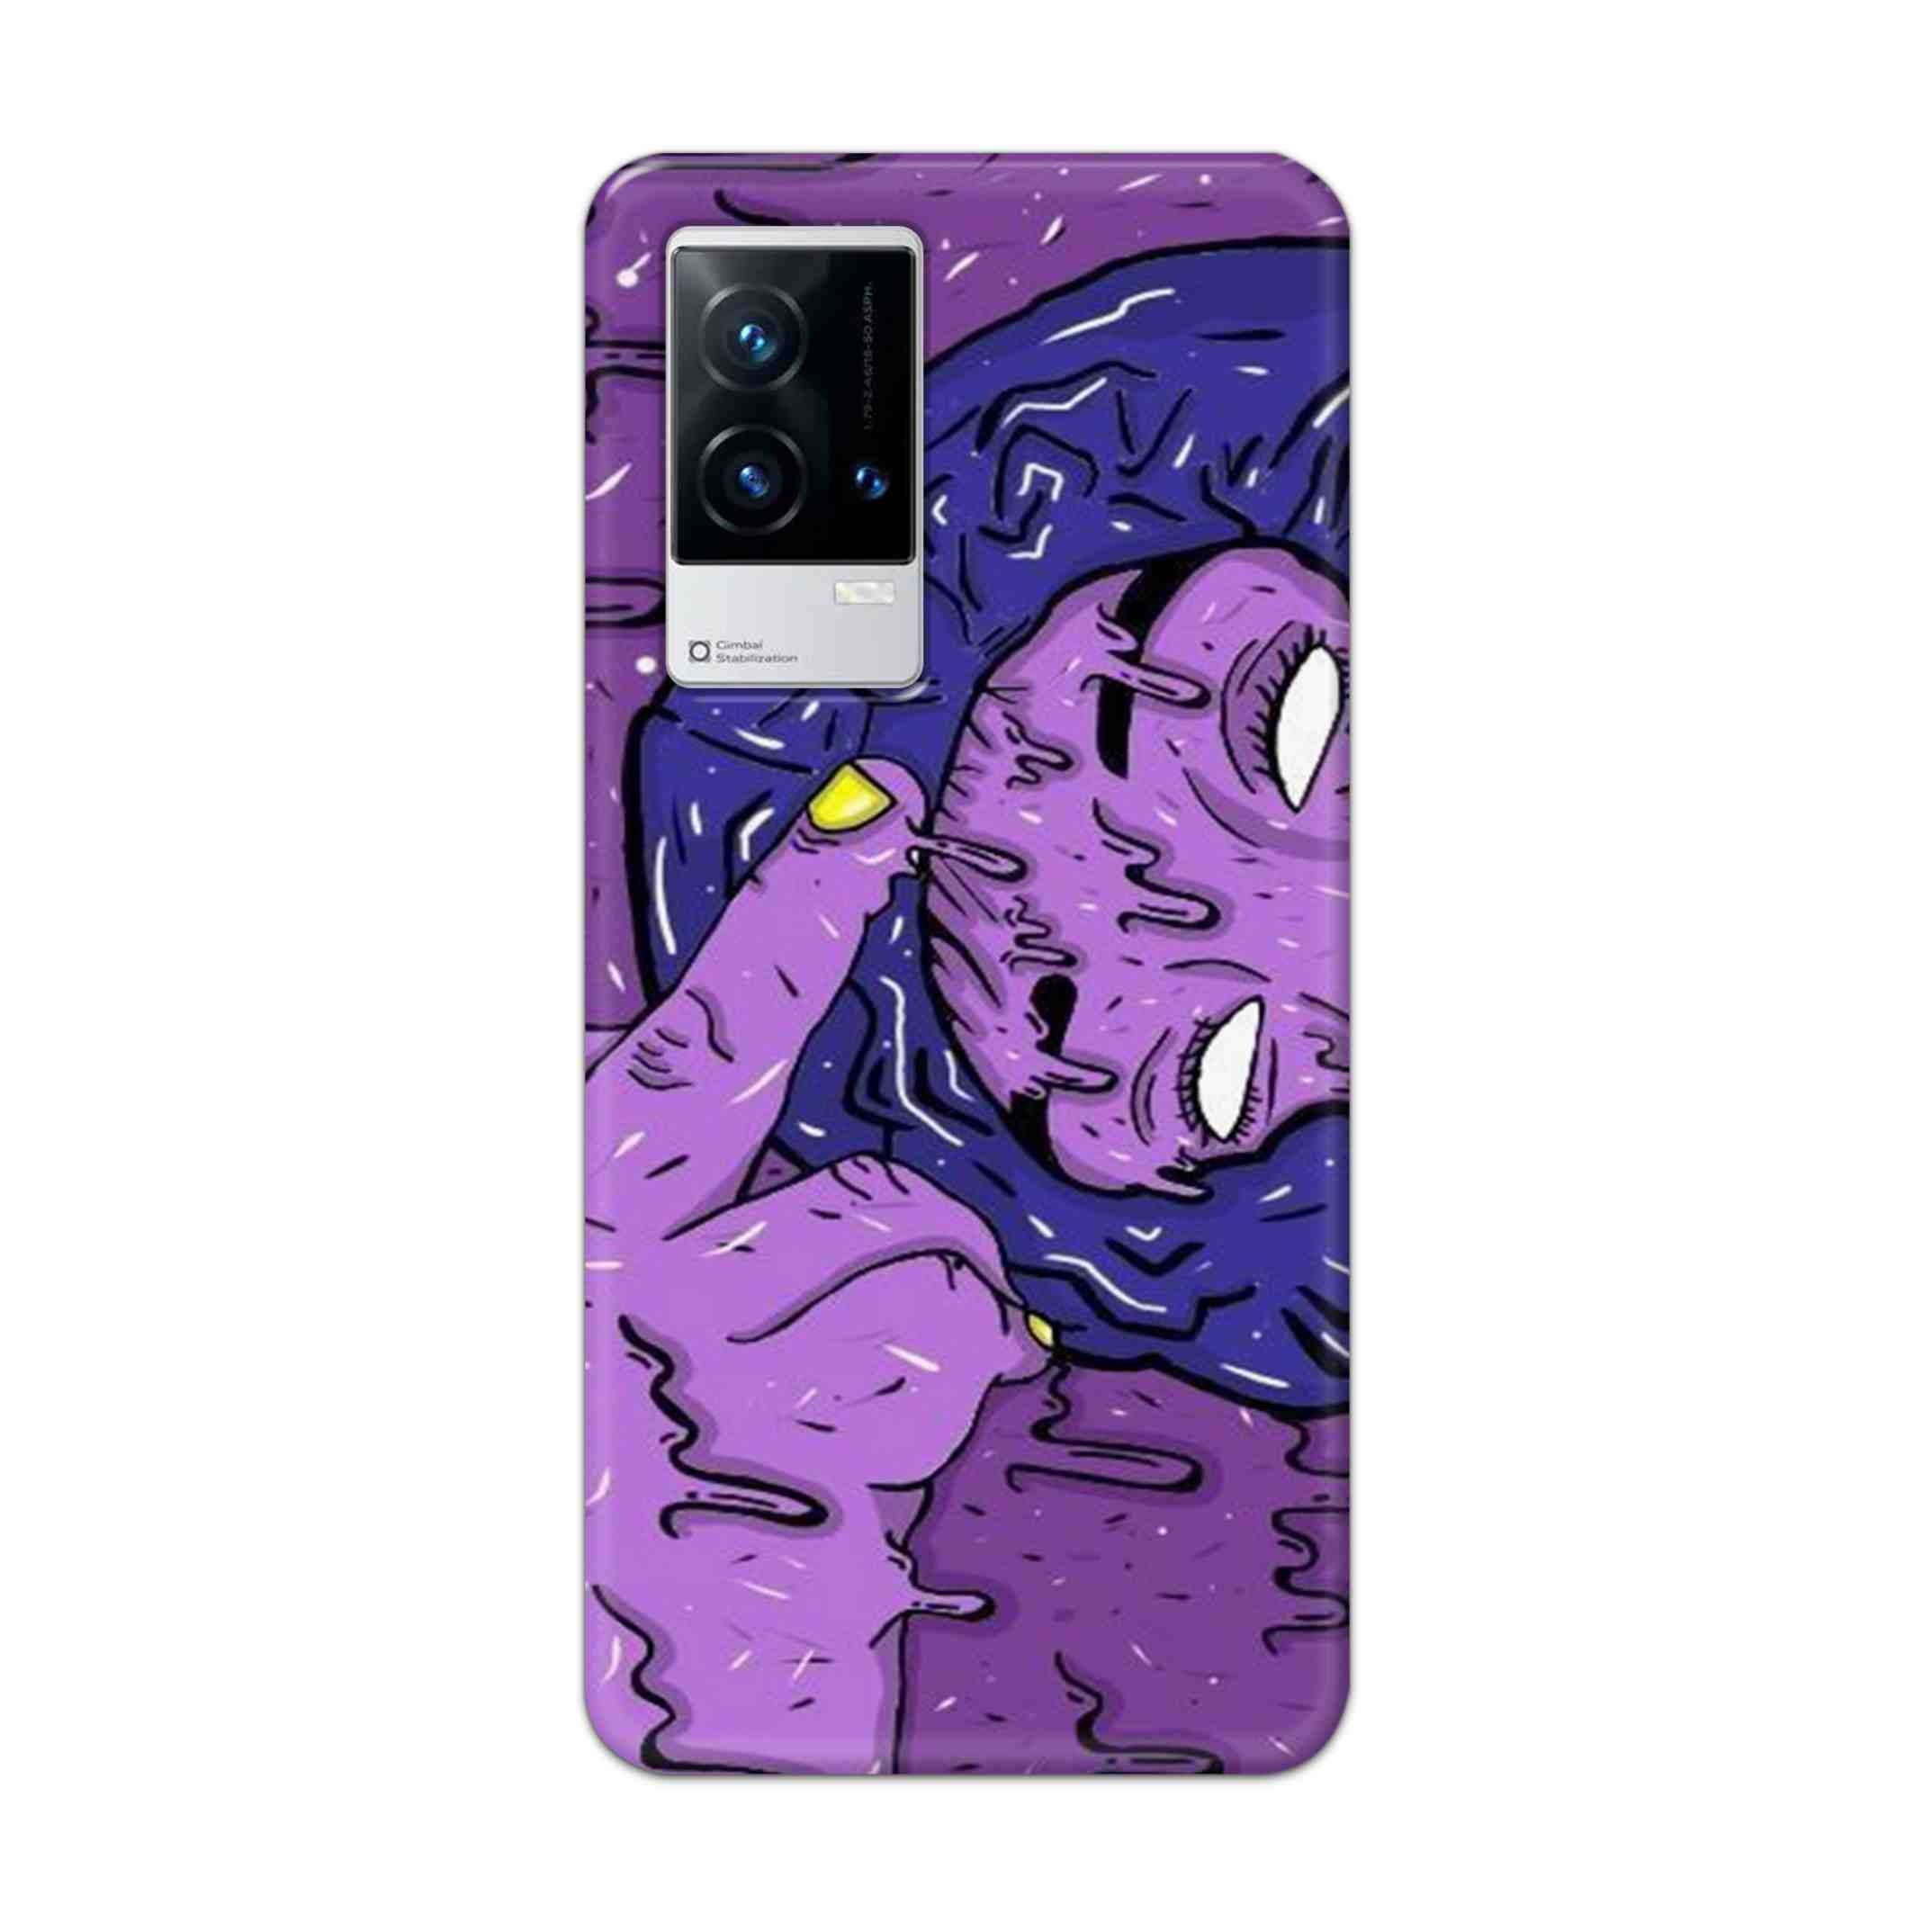 Buy Dashing Art Hard Back Mobile Phone Case Cover For Vivo iQOO 9 5G Online